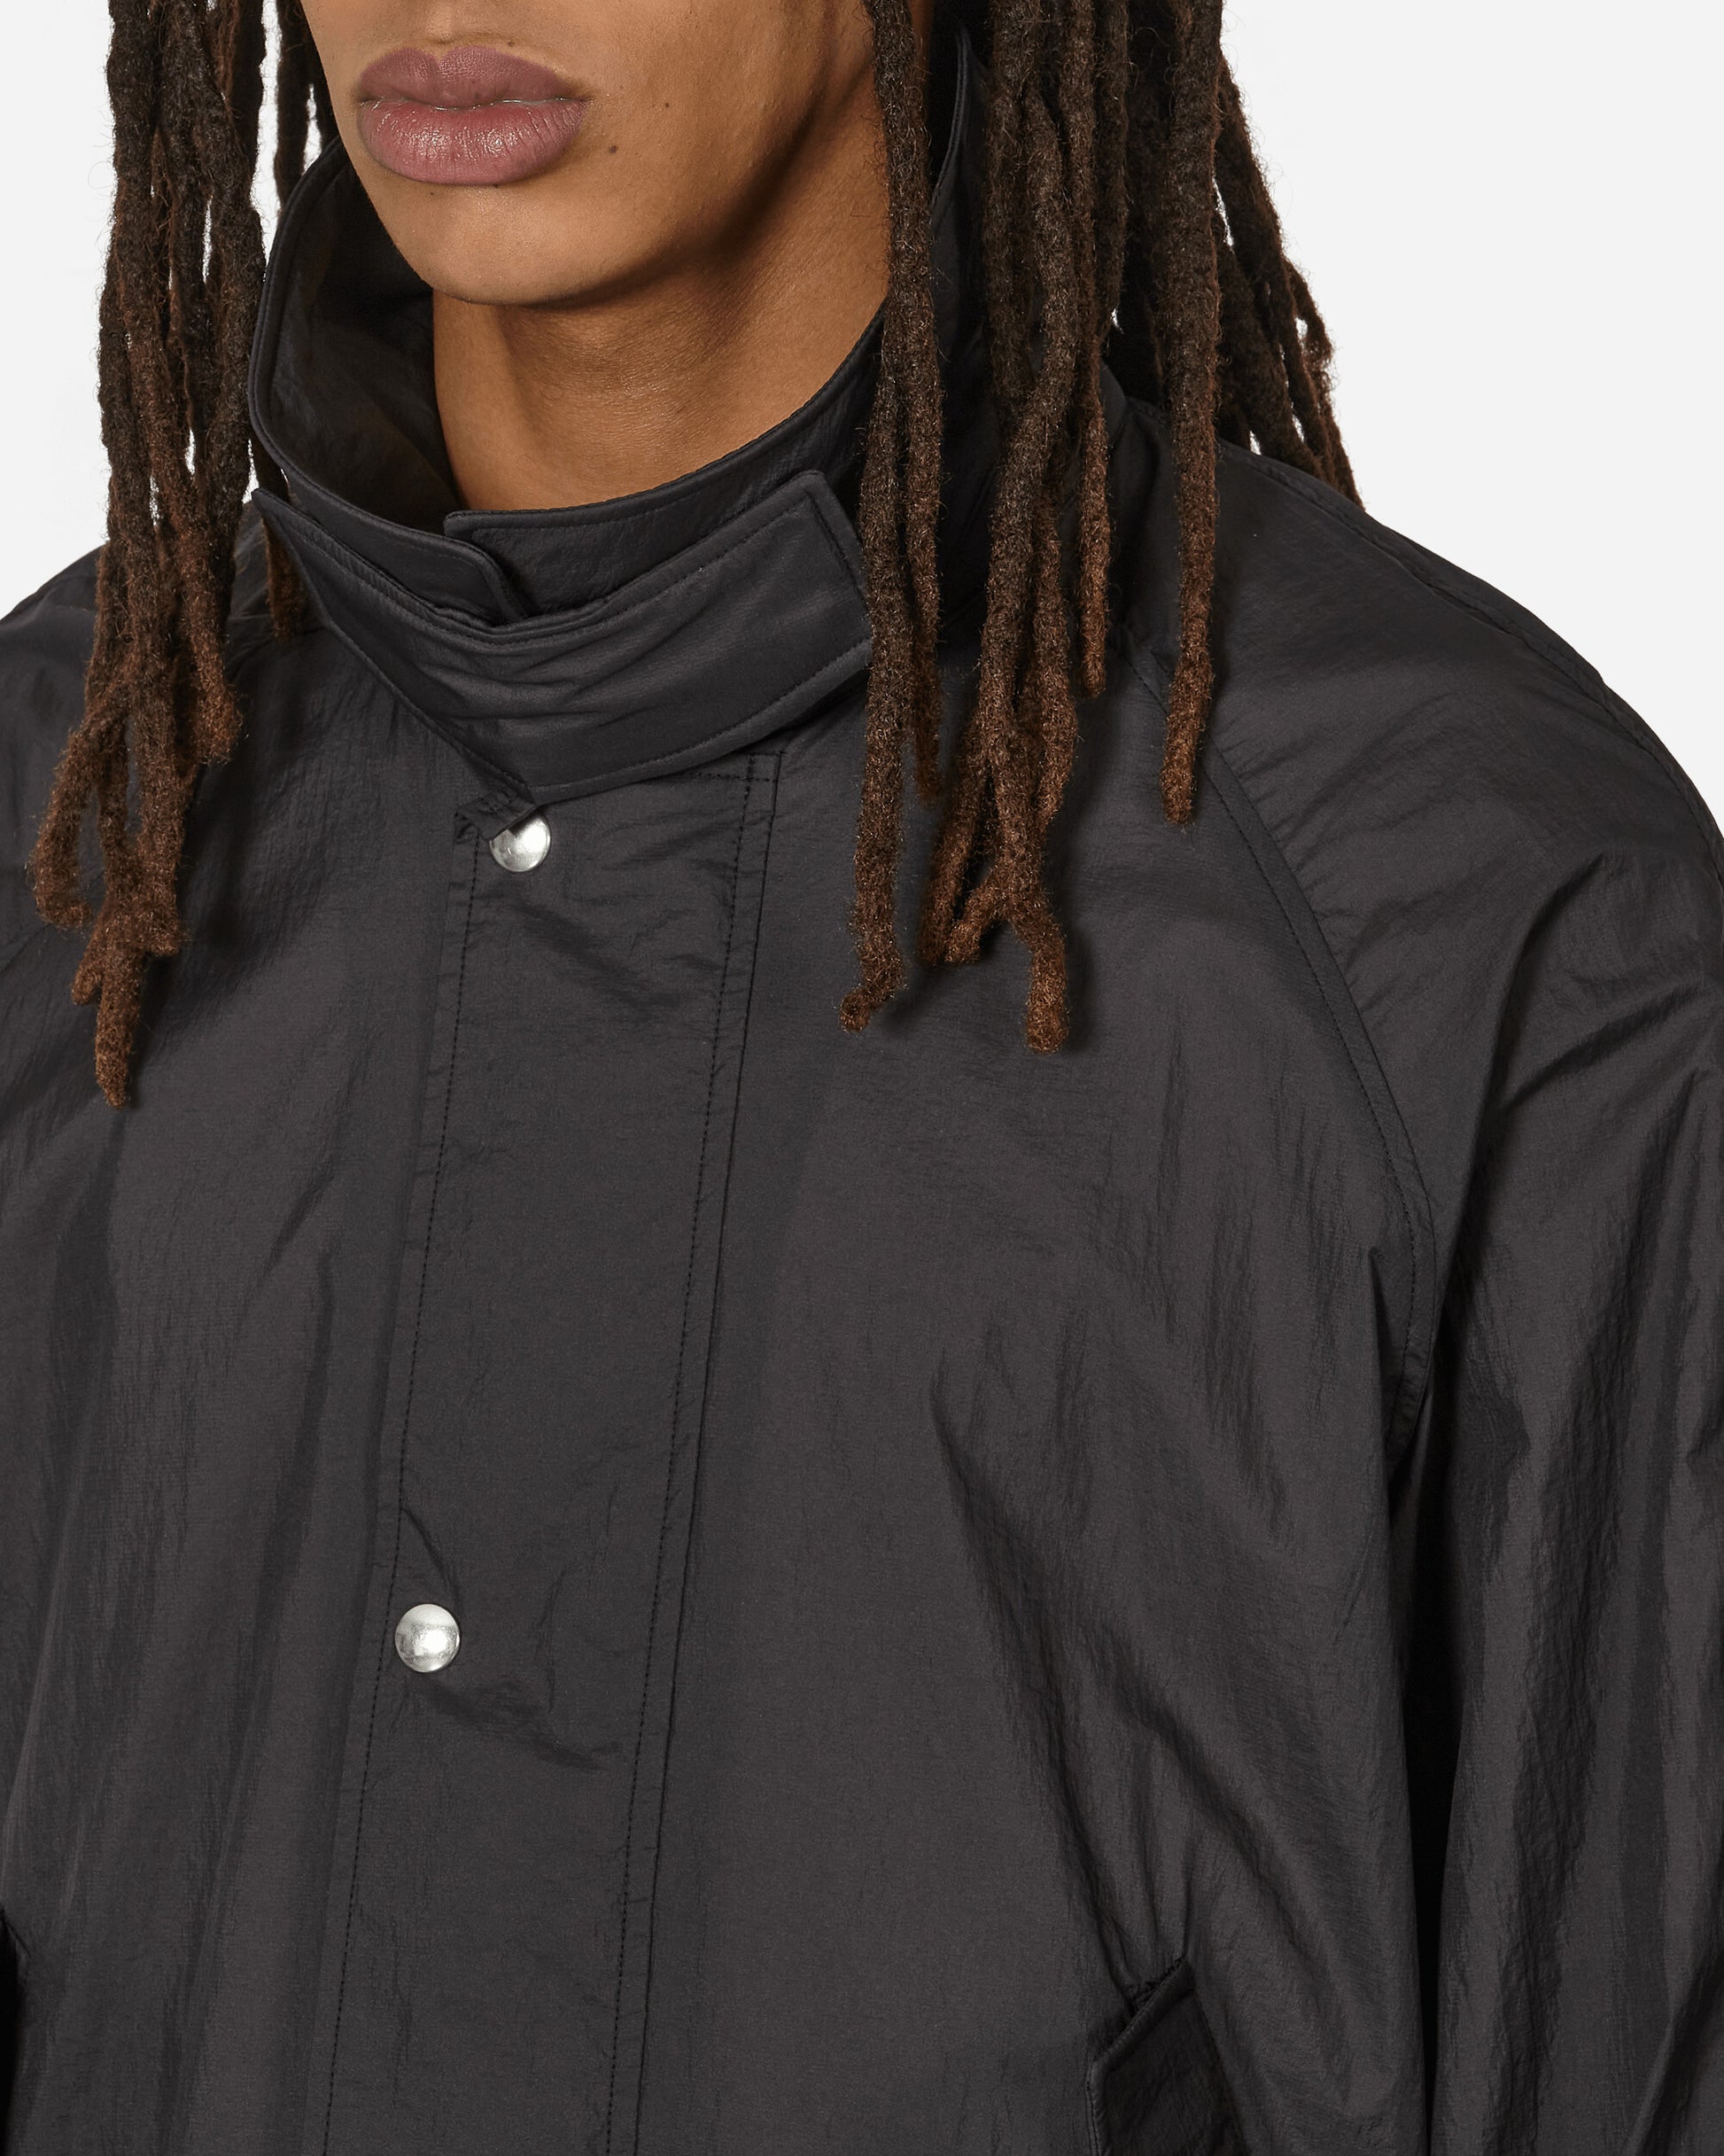 mfpen Provenance Jacket Black Coats and Jackets Jackets M124-53 1